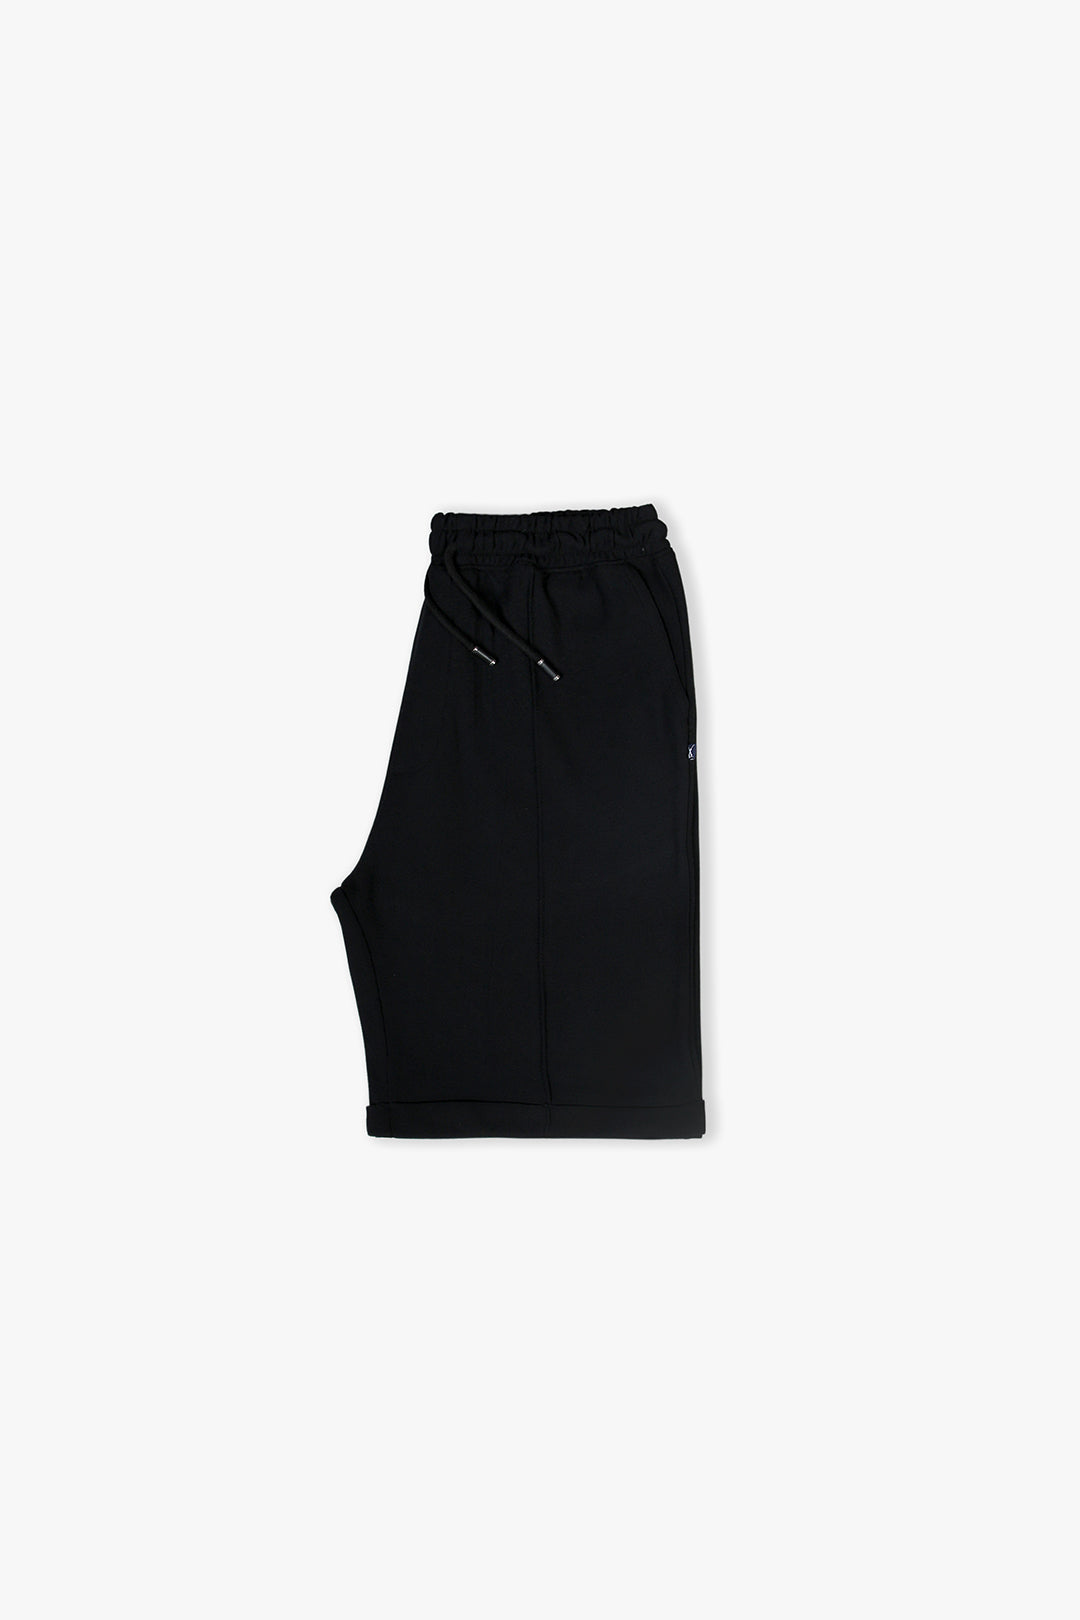 Men's Black Shorts